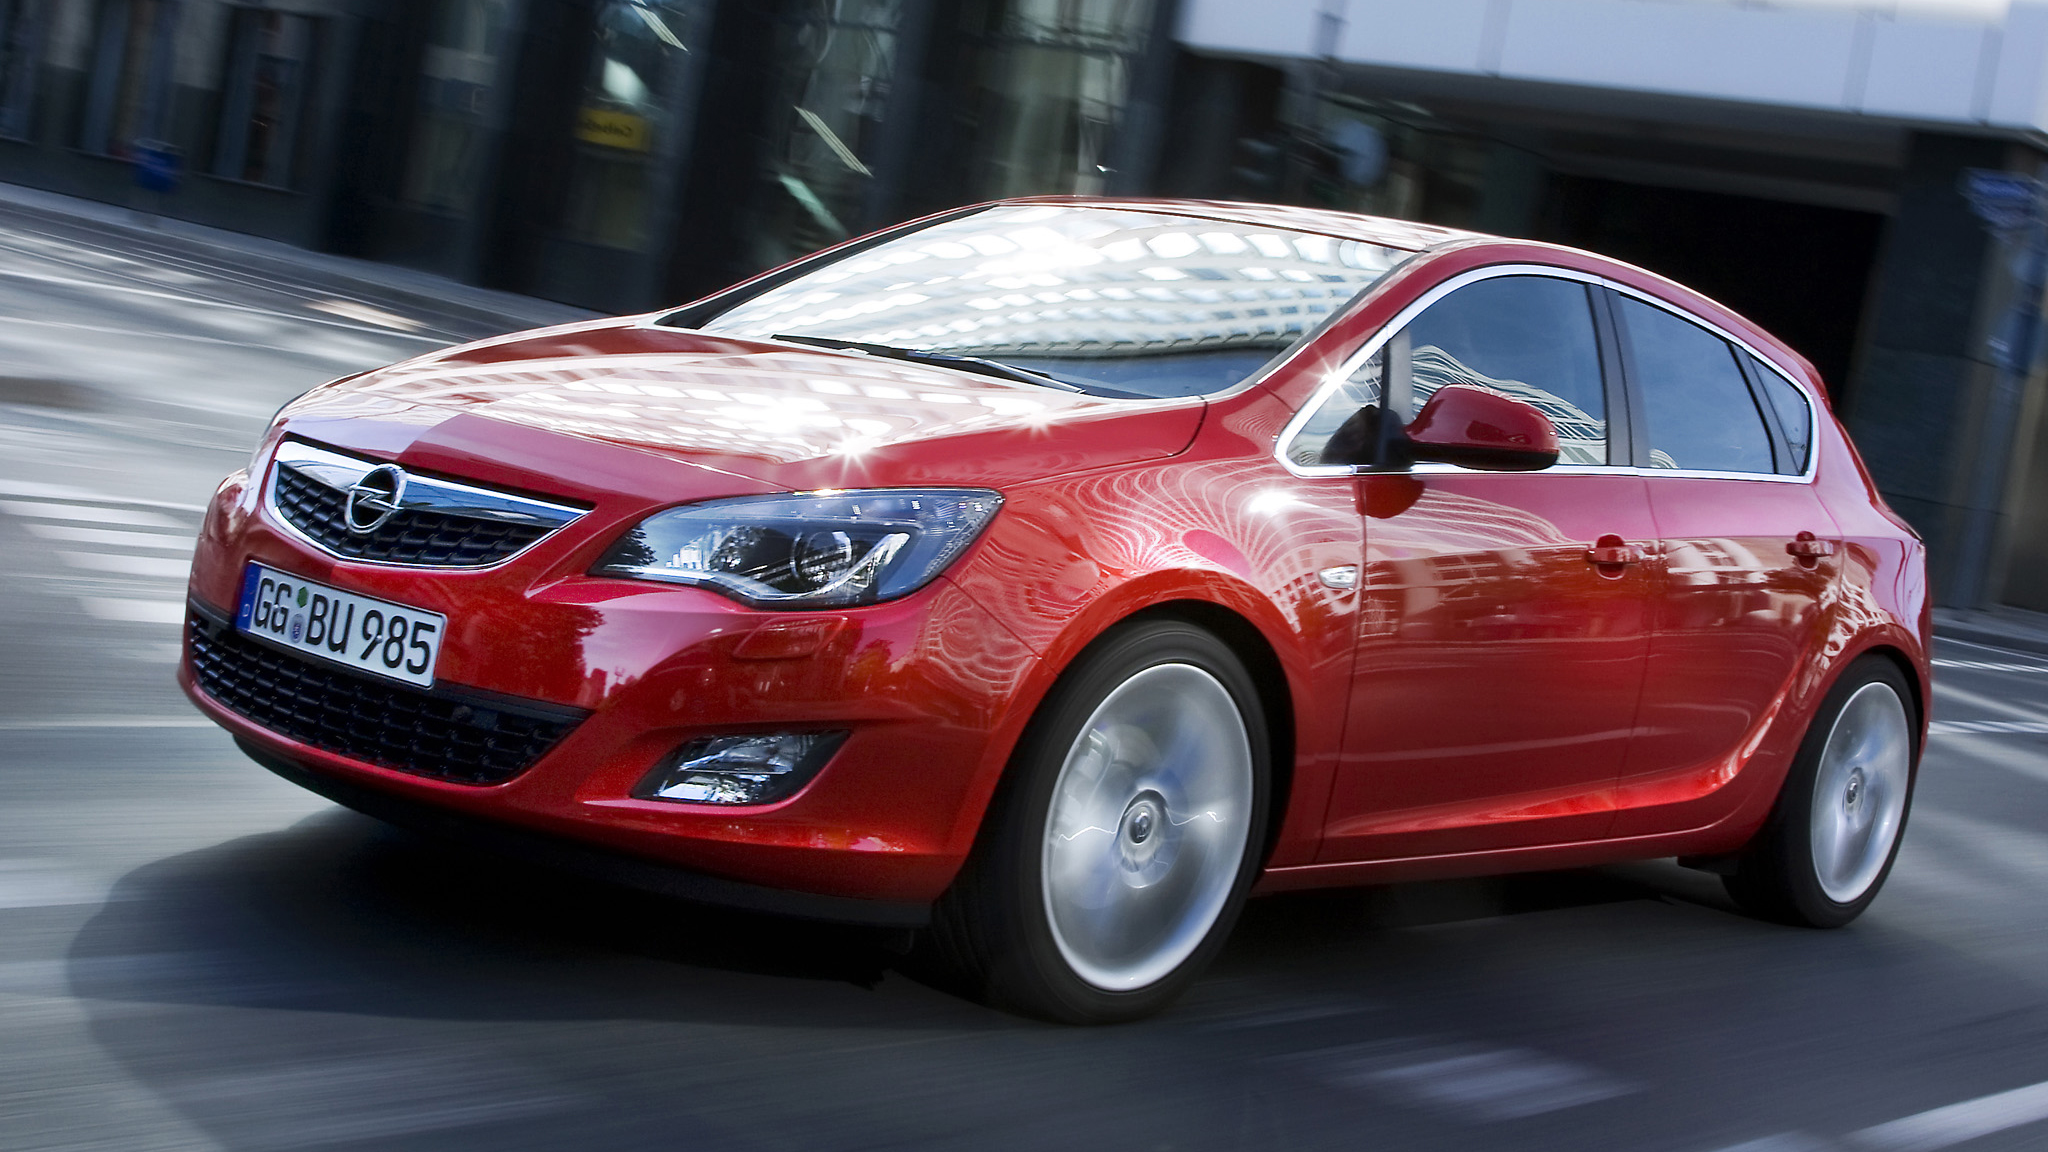 tweedehands Opel Astra kopen? Dit is wat je moet weten